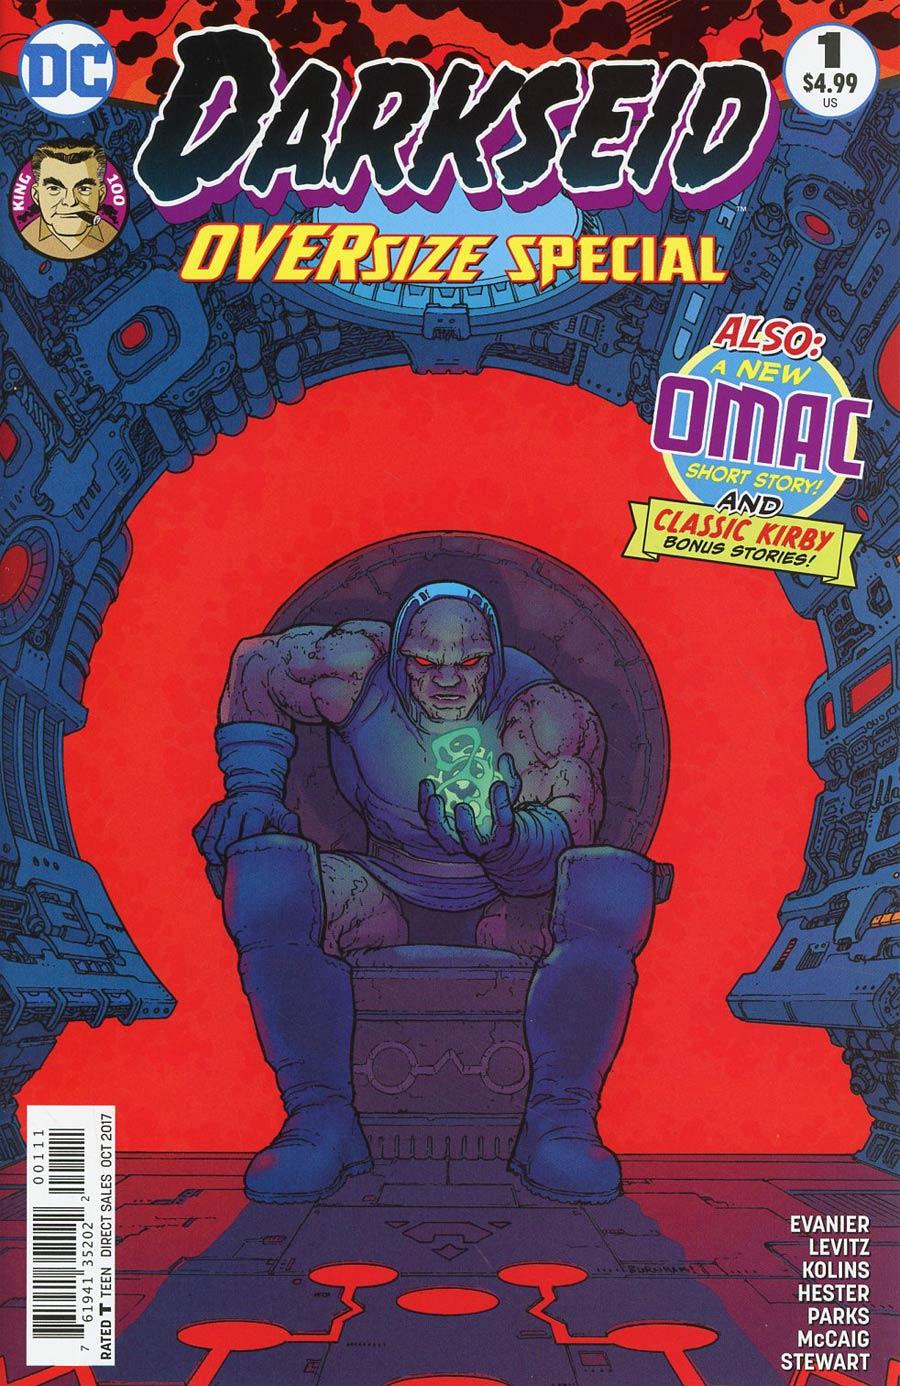 Darkseid Special Vol. 1 #1